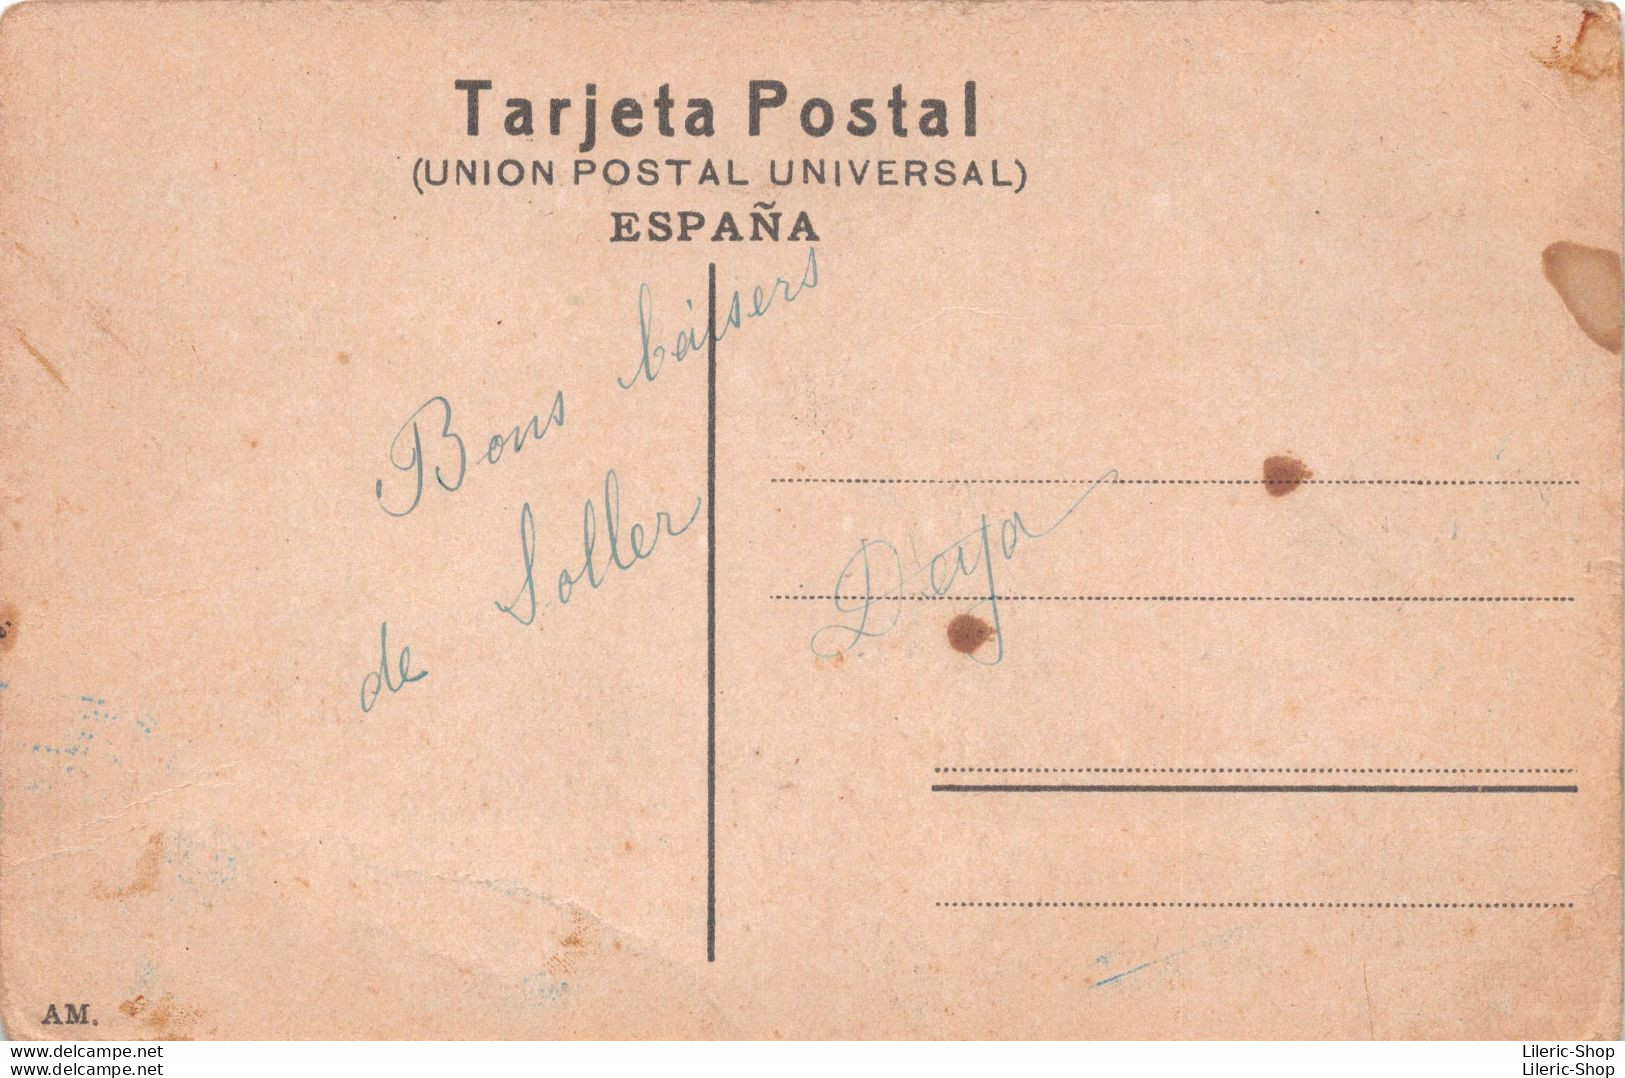 MALLORCA - 274  SOLLER Detalle Del Puerto Cpa ± 1910 ♣♣♣ - Mallorca